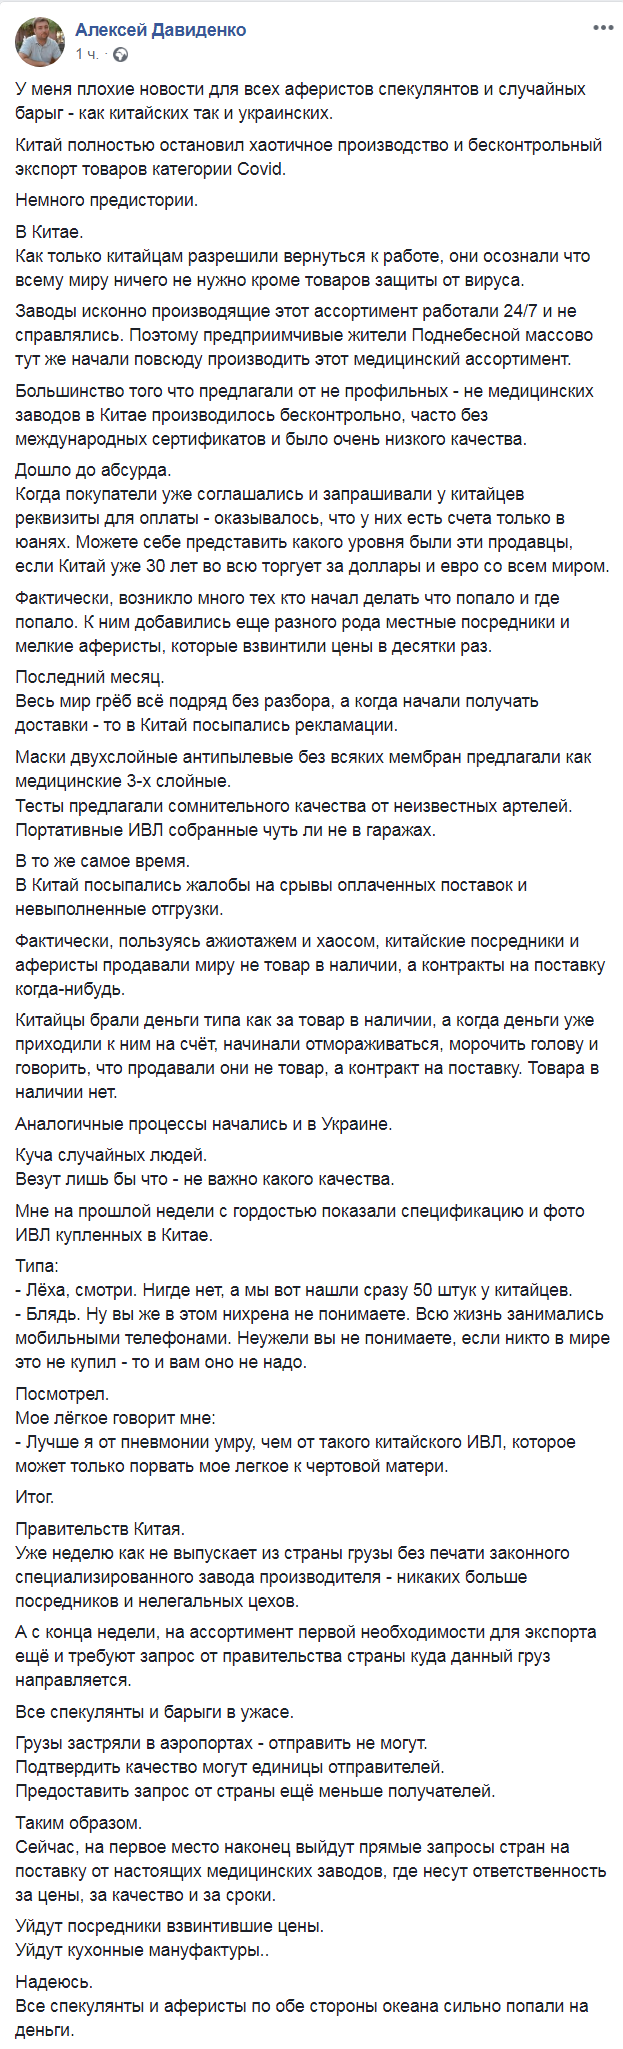 Скриншот из Facebook Алексея Давиденко